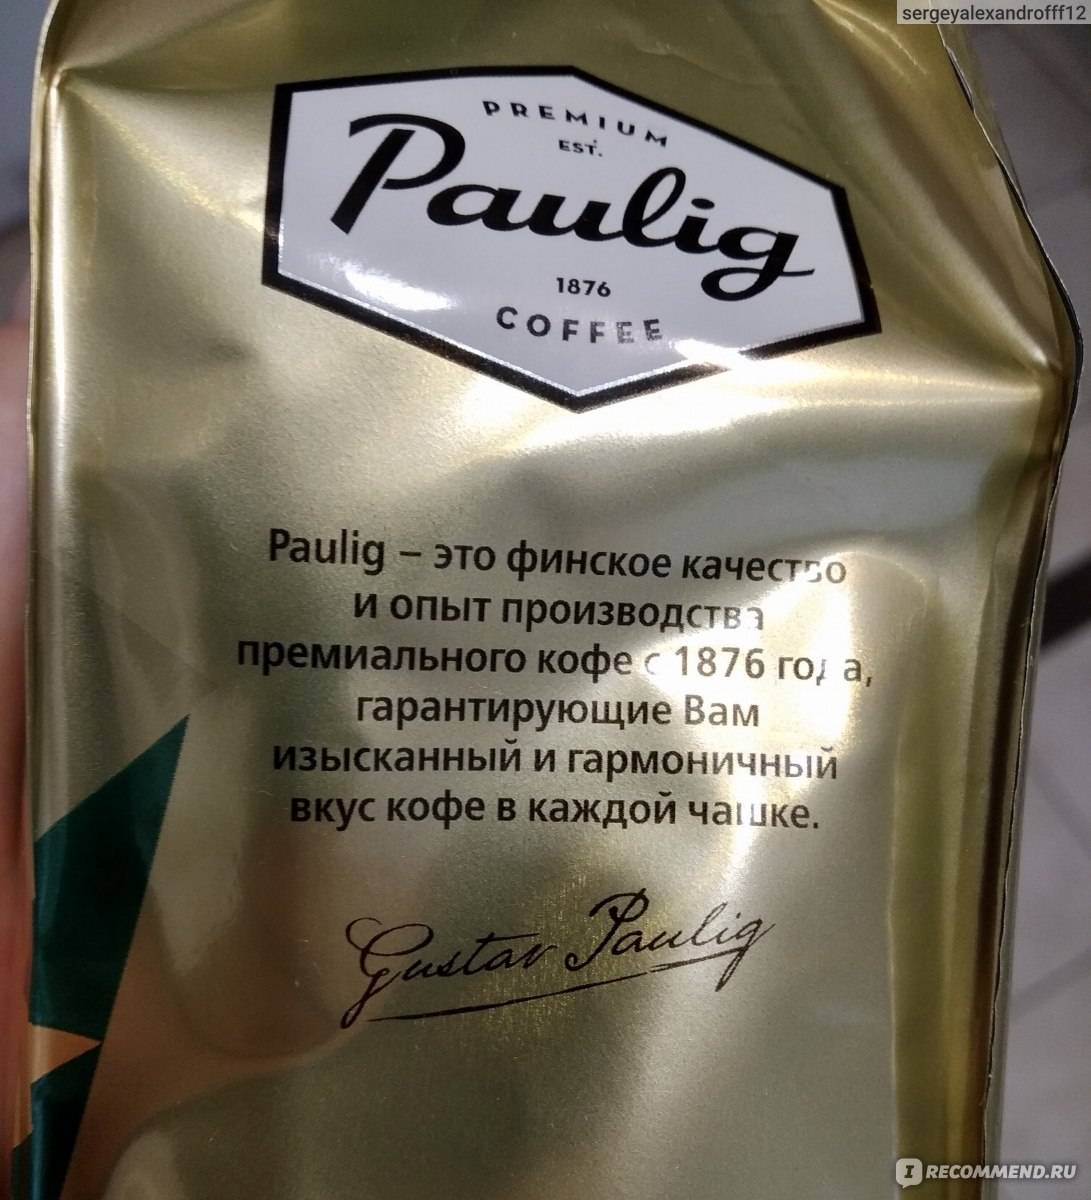 Кофе paulig presidentti: история возникновения бренда, ассортимент и отзывы